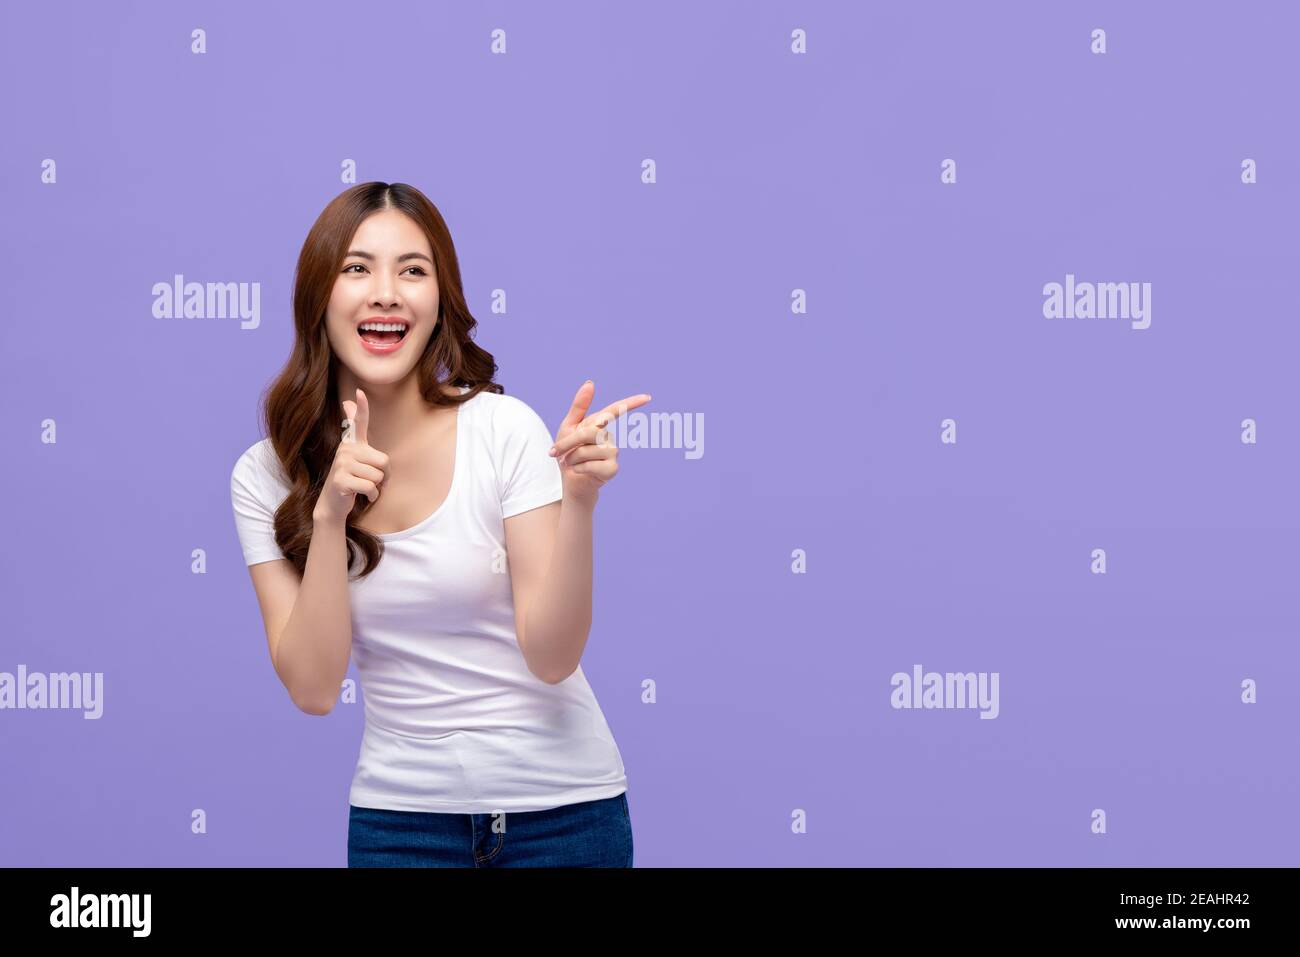 Jeune femme asiatique dans des vêtements décontractés avec grand sourire et bonne expression joyeuse pointant les mains vers l'espace vide isolé sur fond violet Banque D'Images